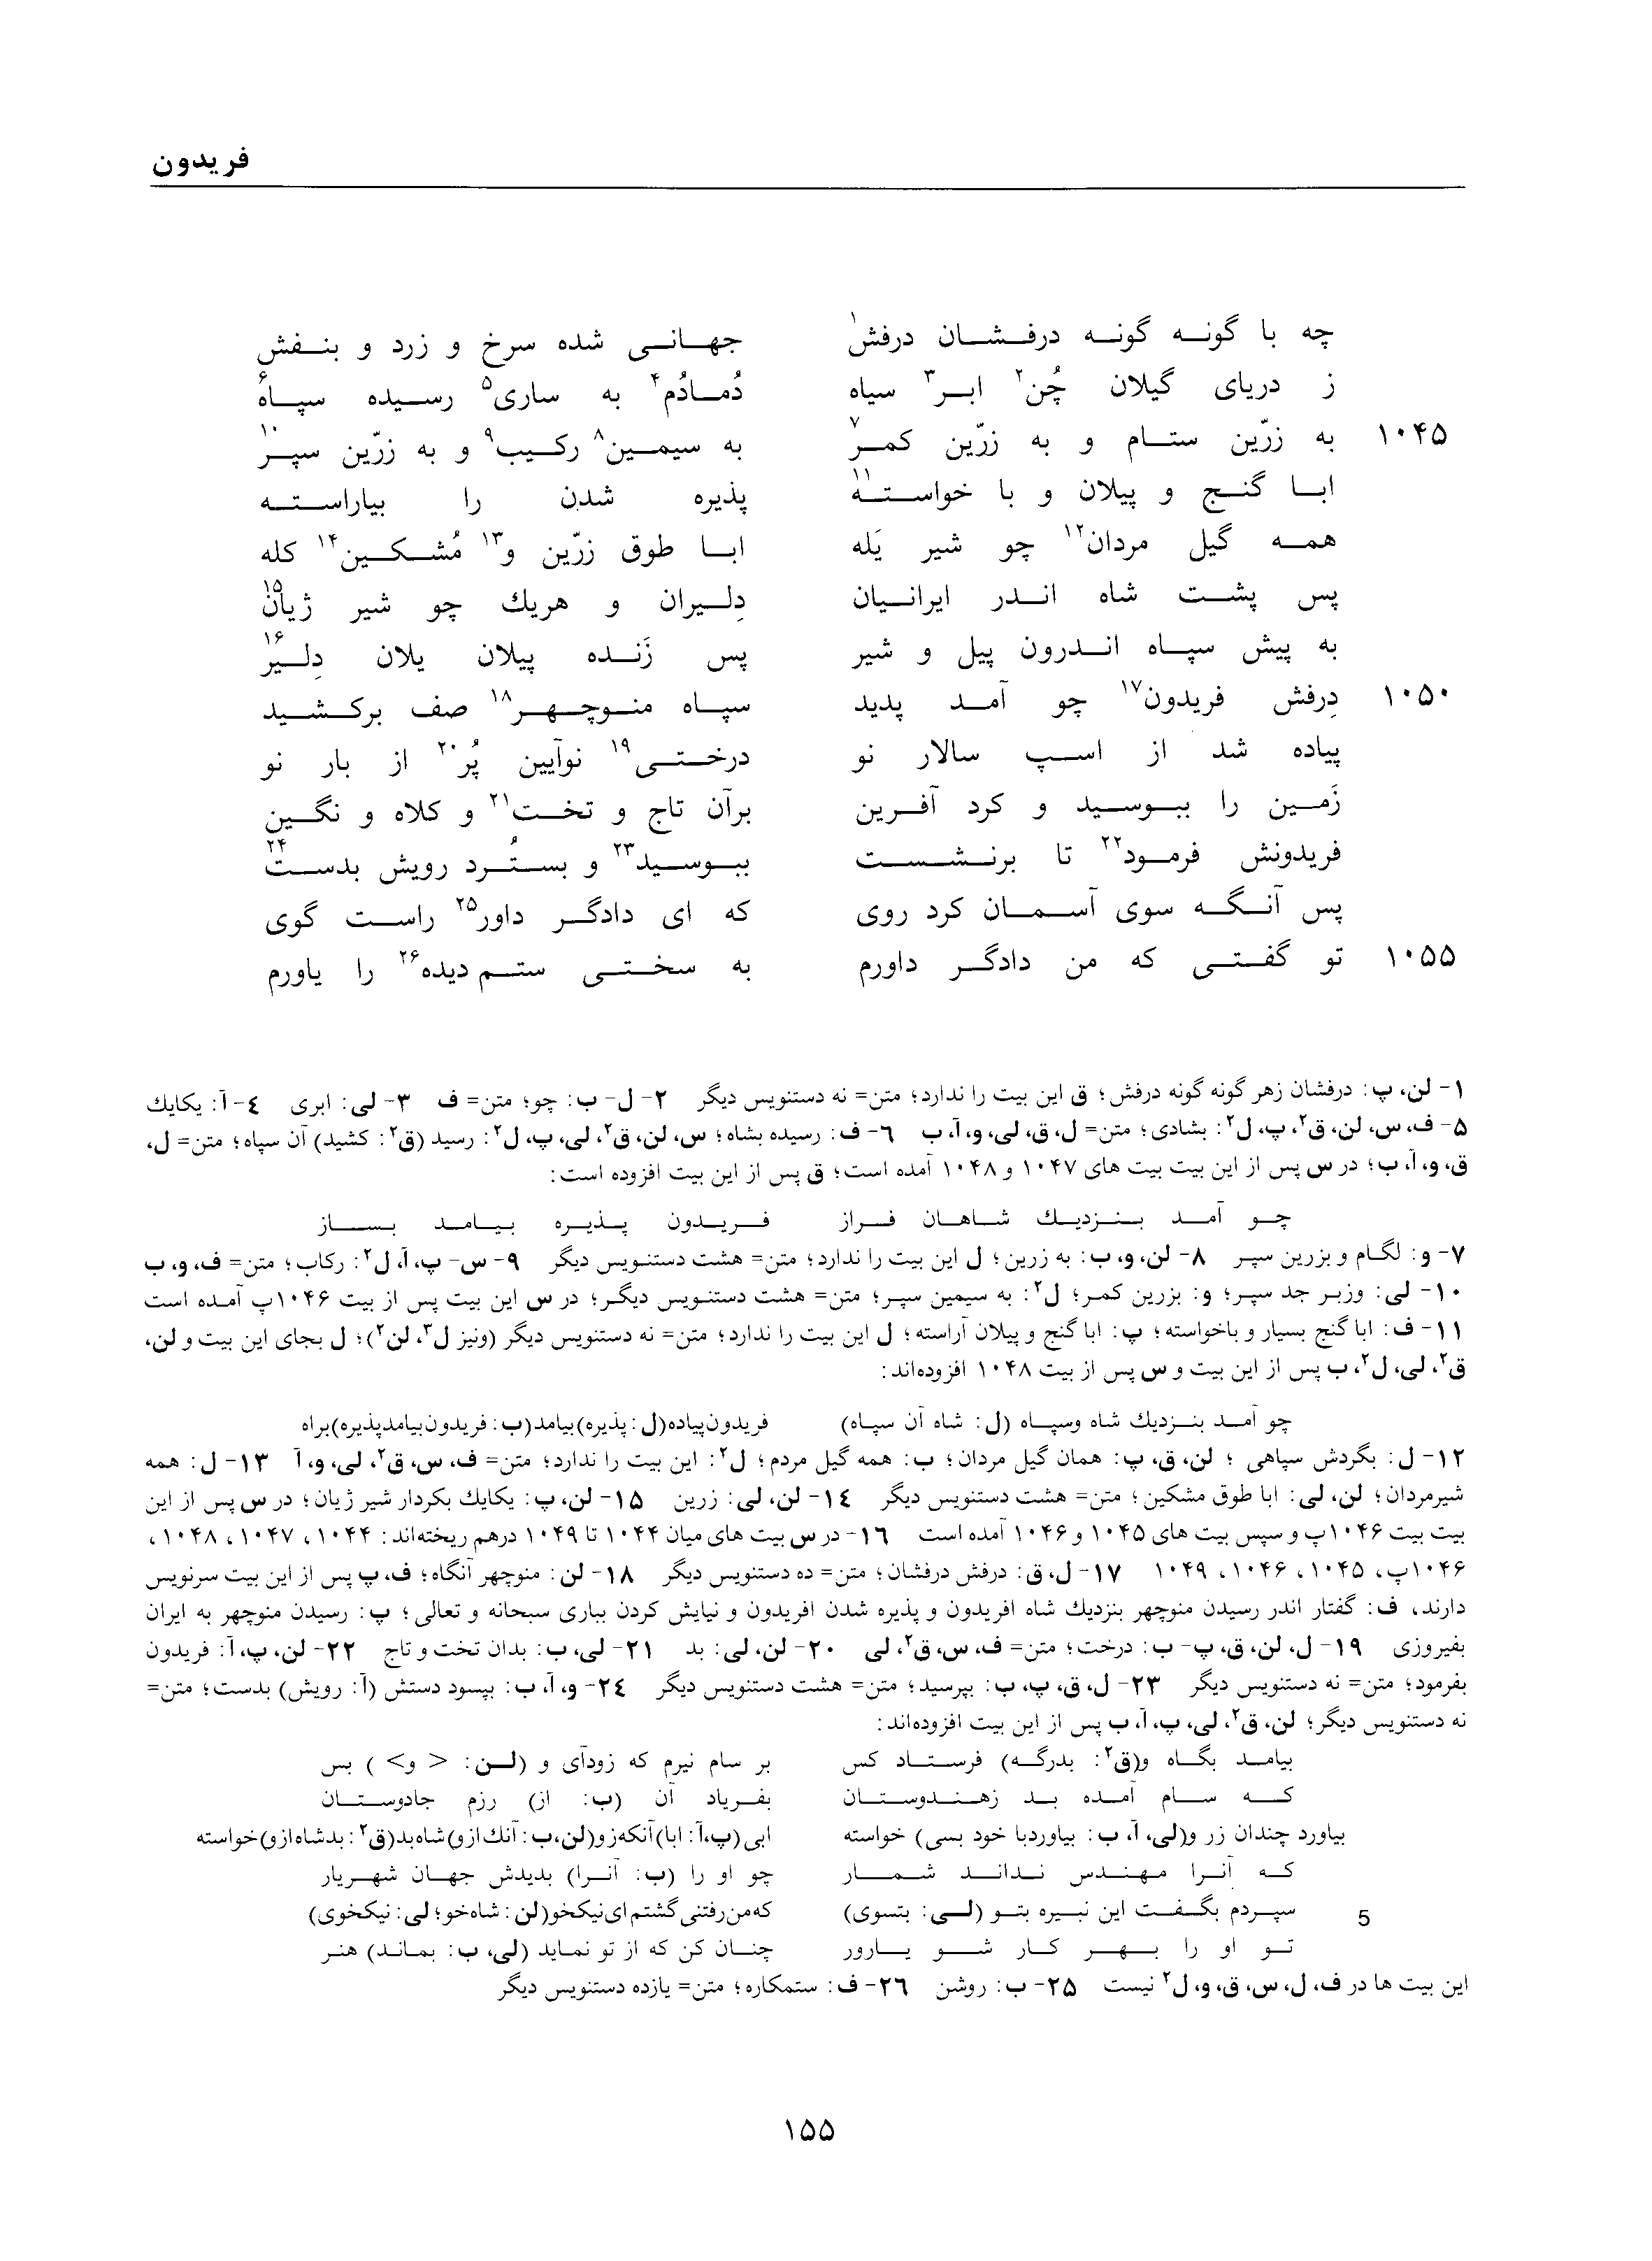 vol. 1, p. 155